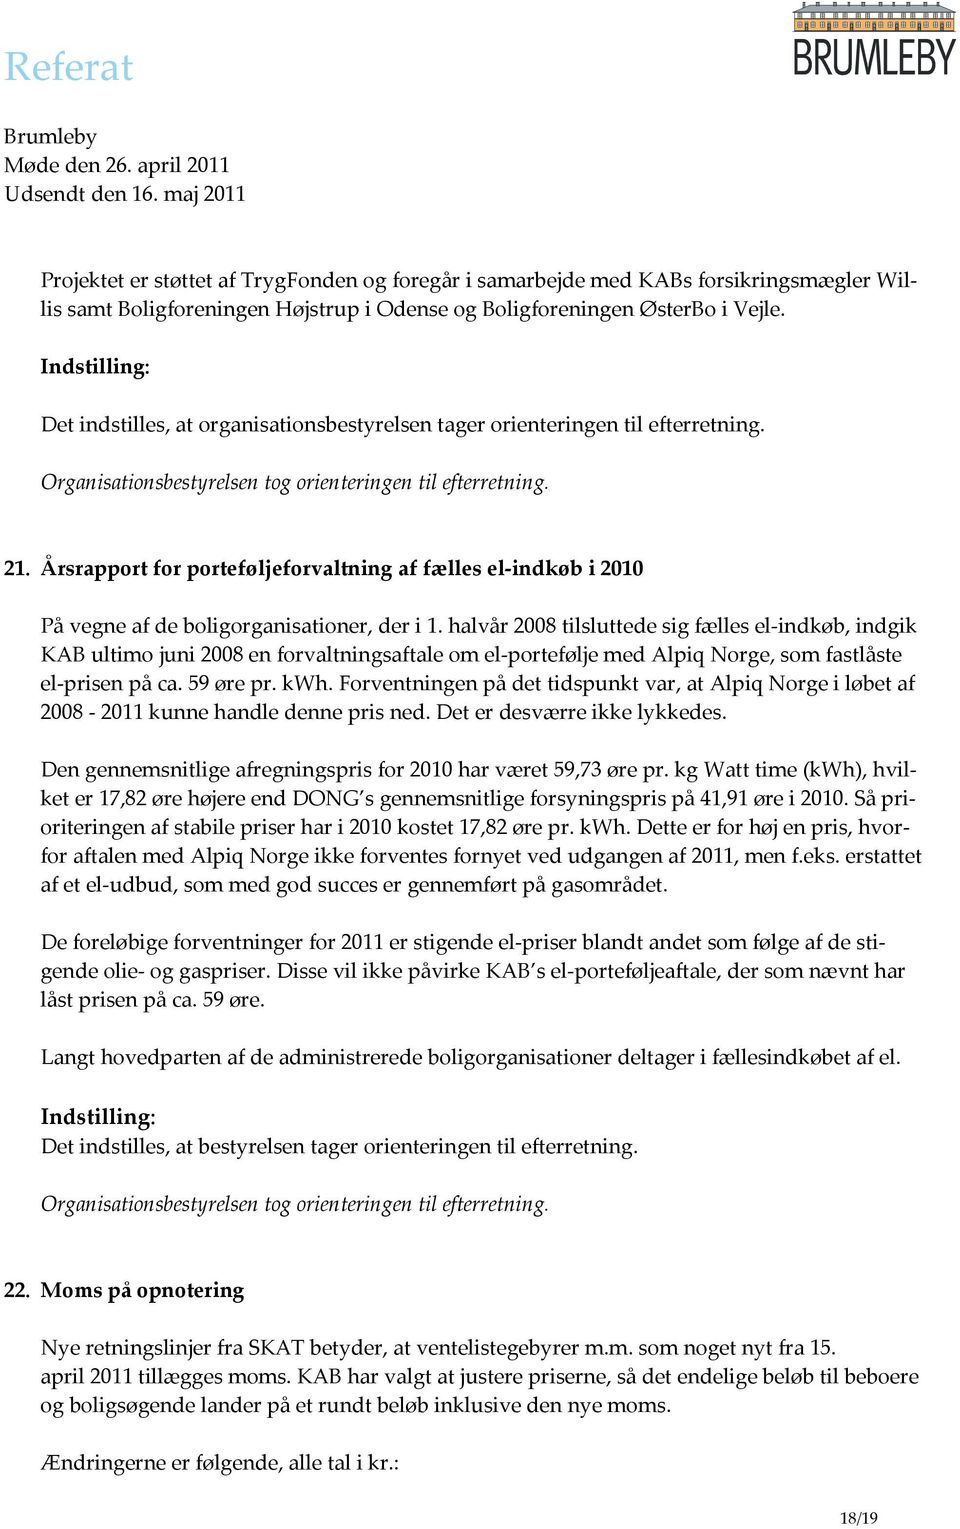 halvår 2008 tilsluttede sig fælles el-indkøb, indgik KAB ultimo juni 2008 en forvaltningsaftale om el-portefølje med Alpiq Norge, som fastlåste el-prisen på ca. 59 øre pr. kwh.